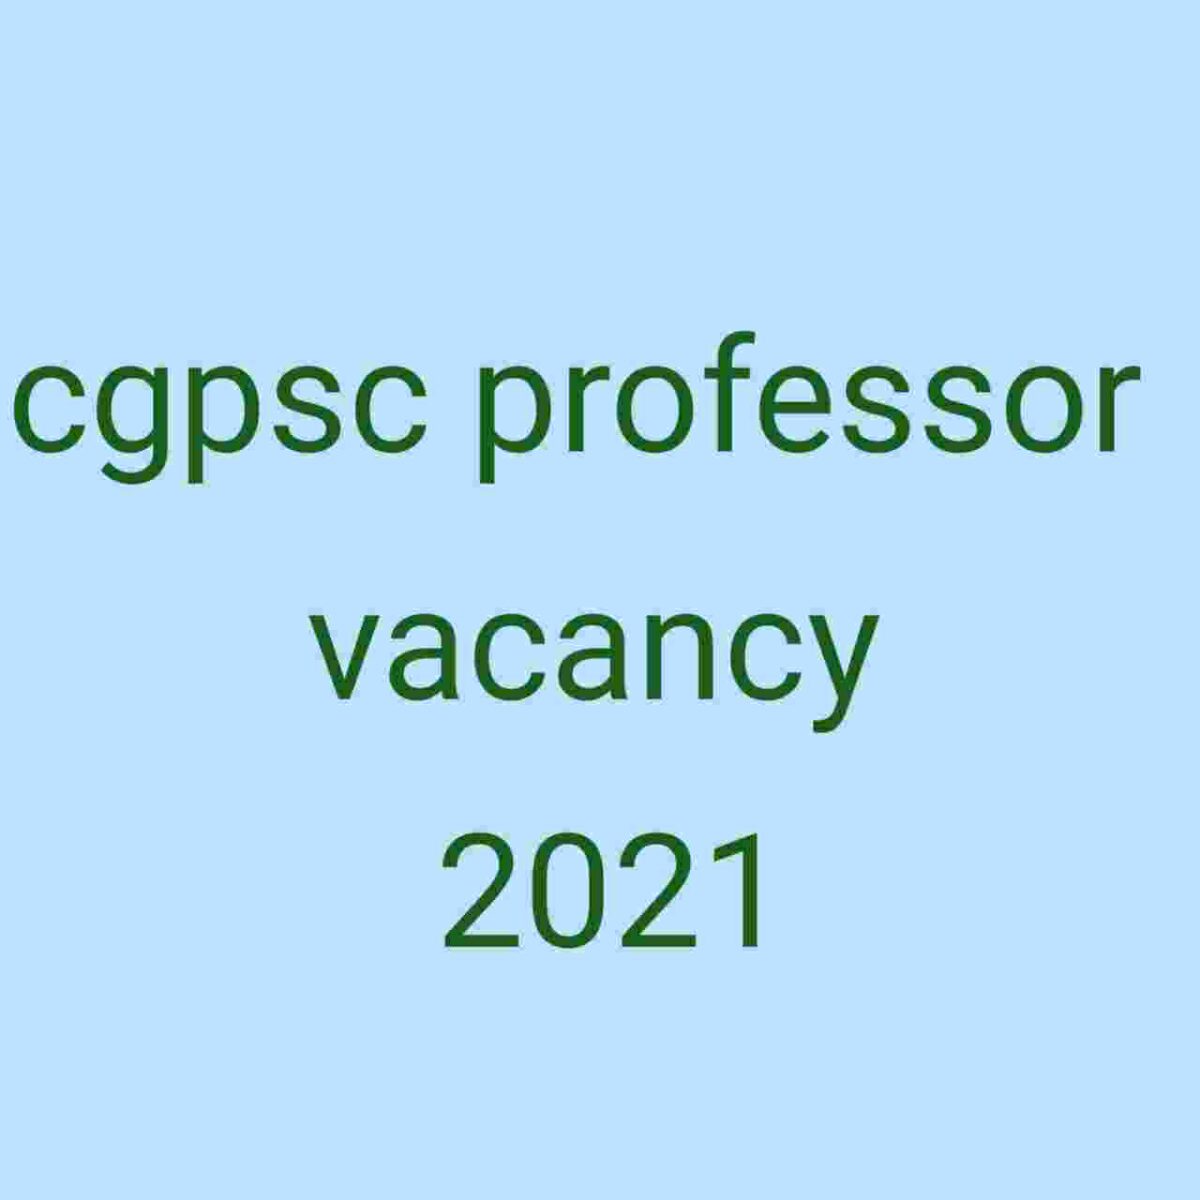 Cgpsc professor vacancy